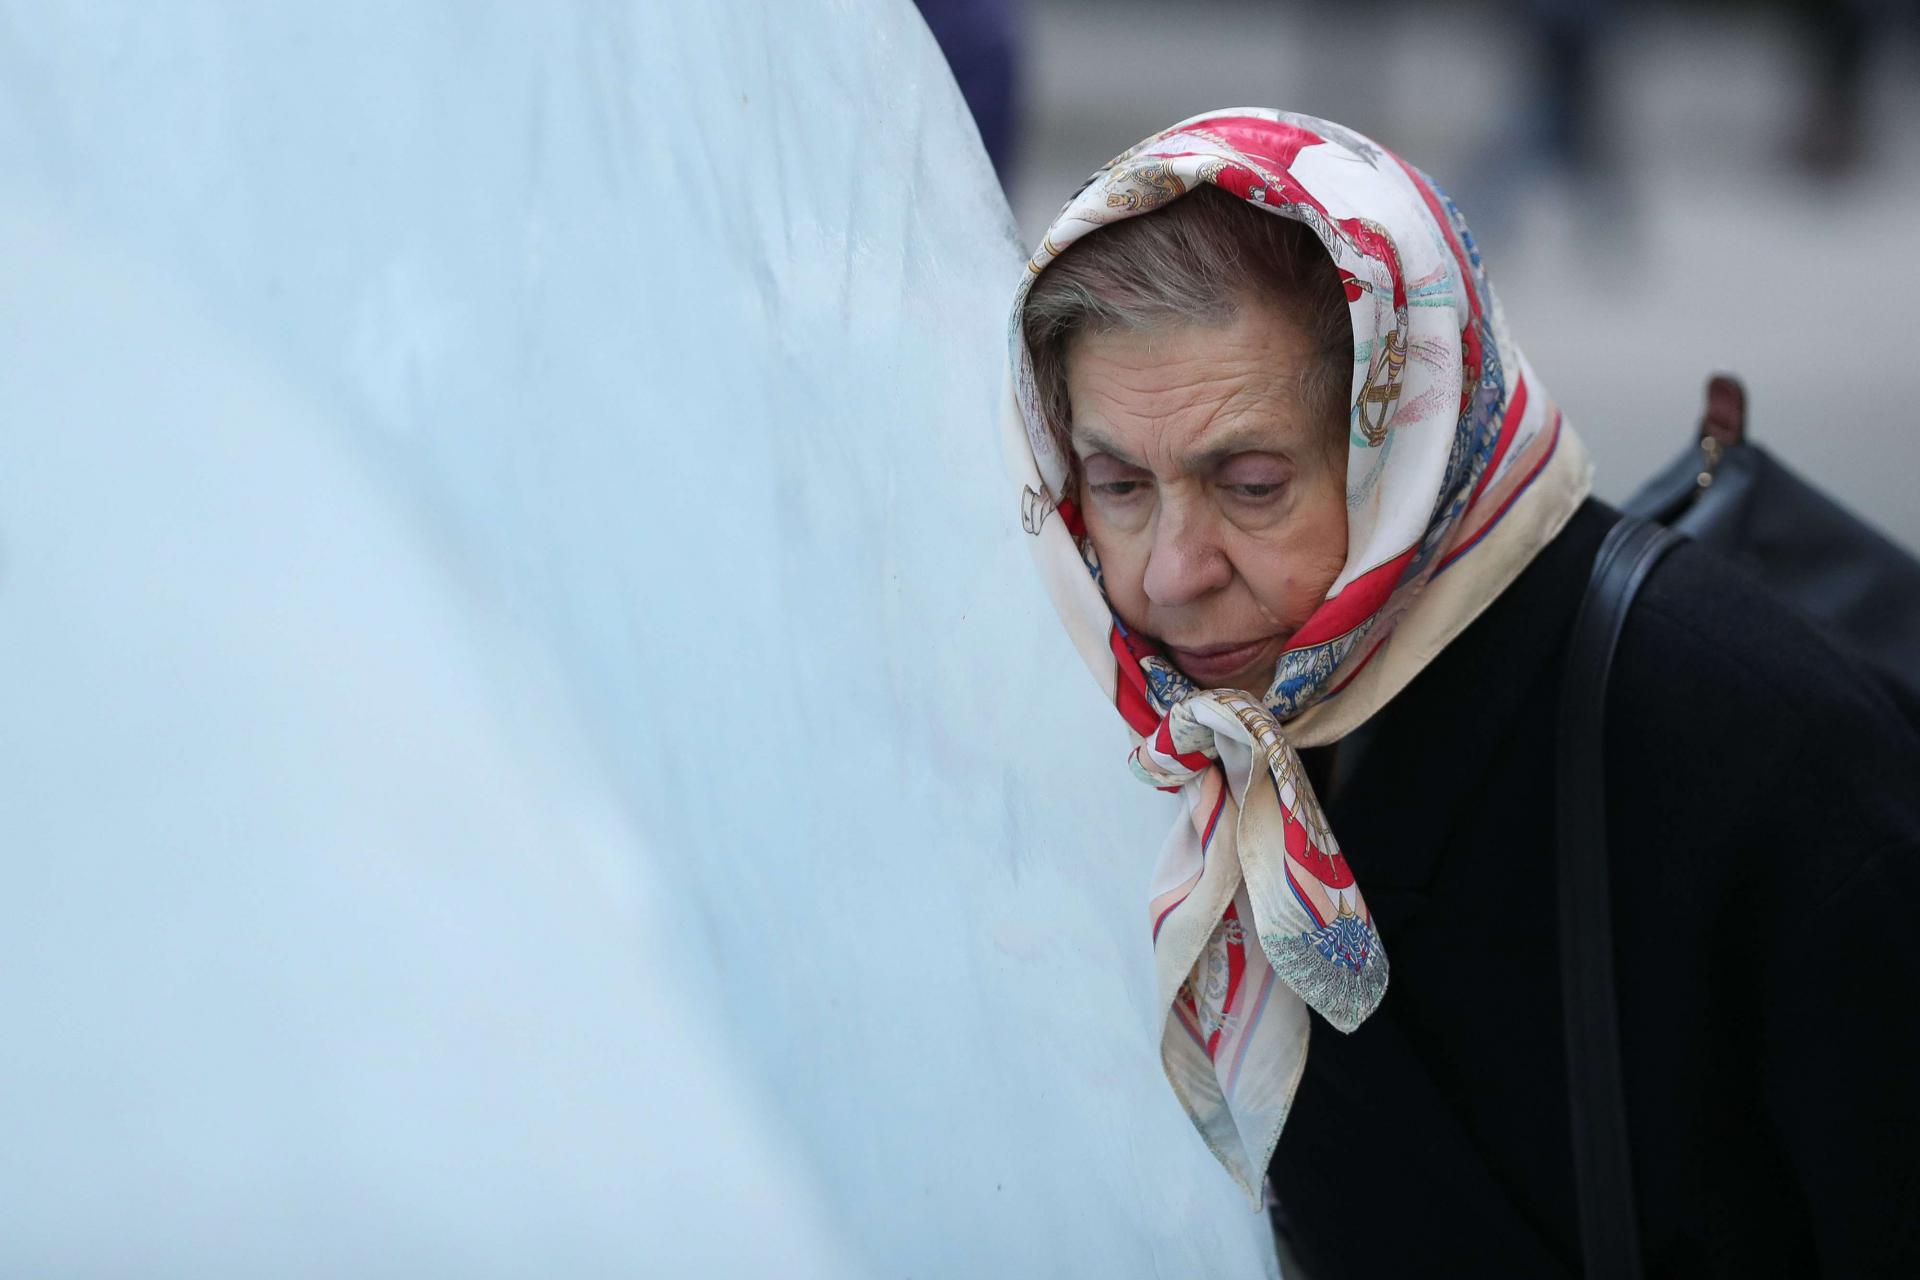 امرأة تضع رأسها على كتلة جليد خلال معرض فني بلندن للتوعية بآثار التغير المناخي